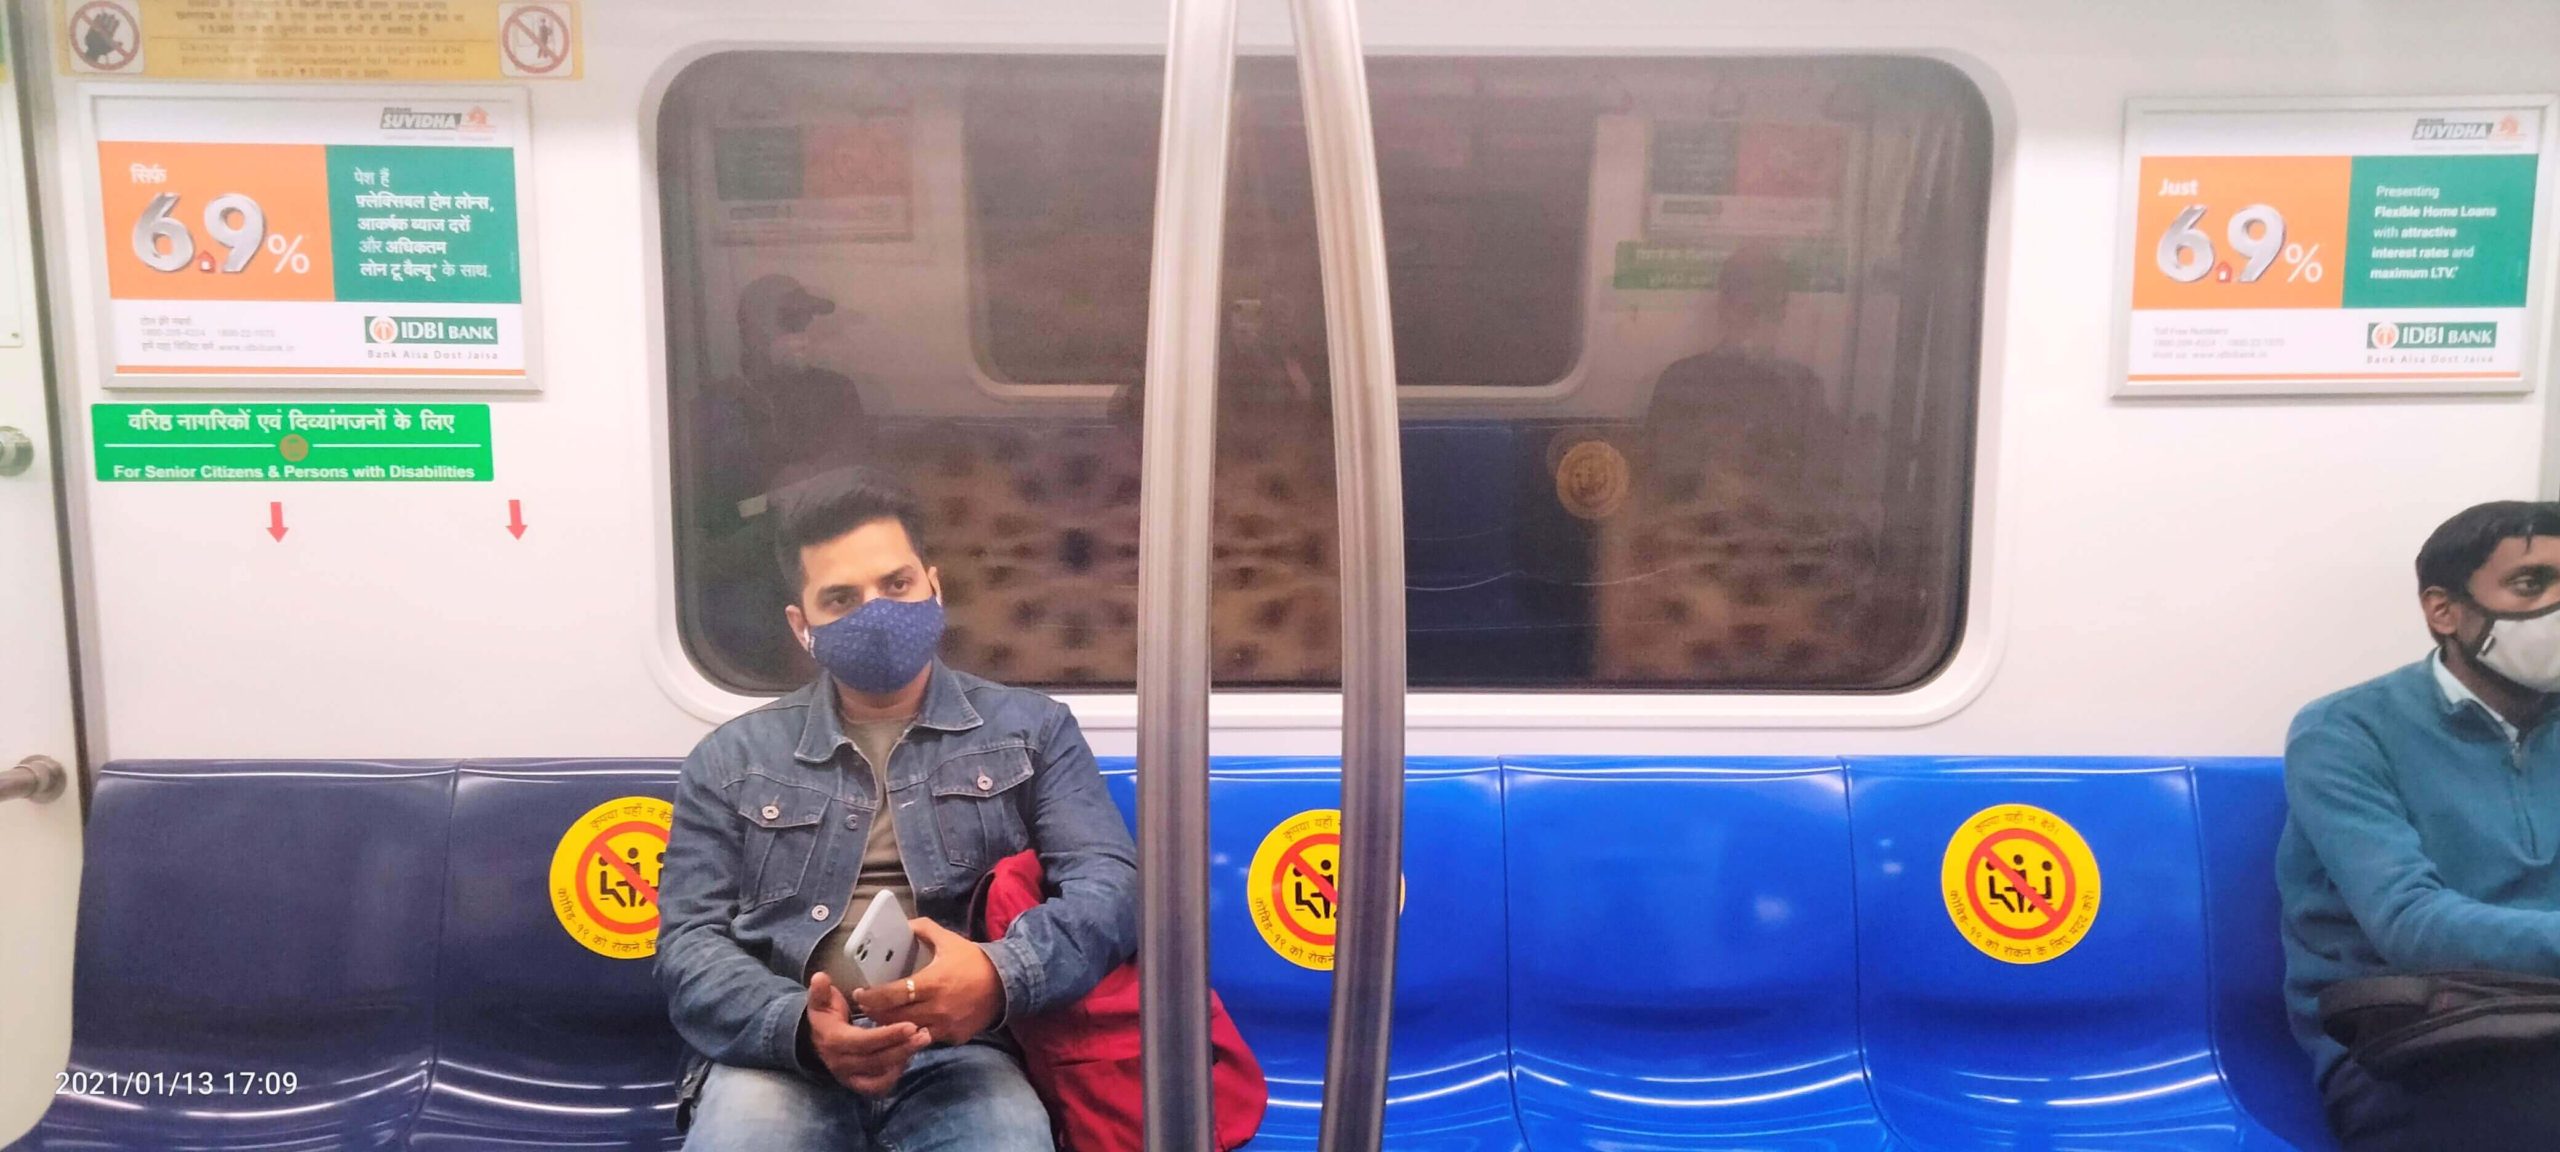 IDBI - Delhi Metro